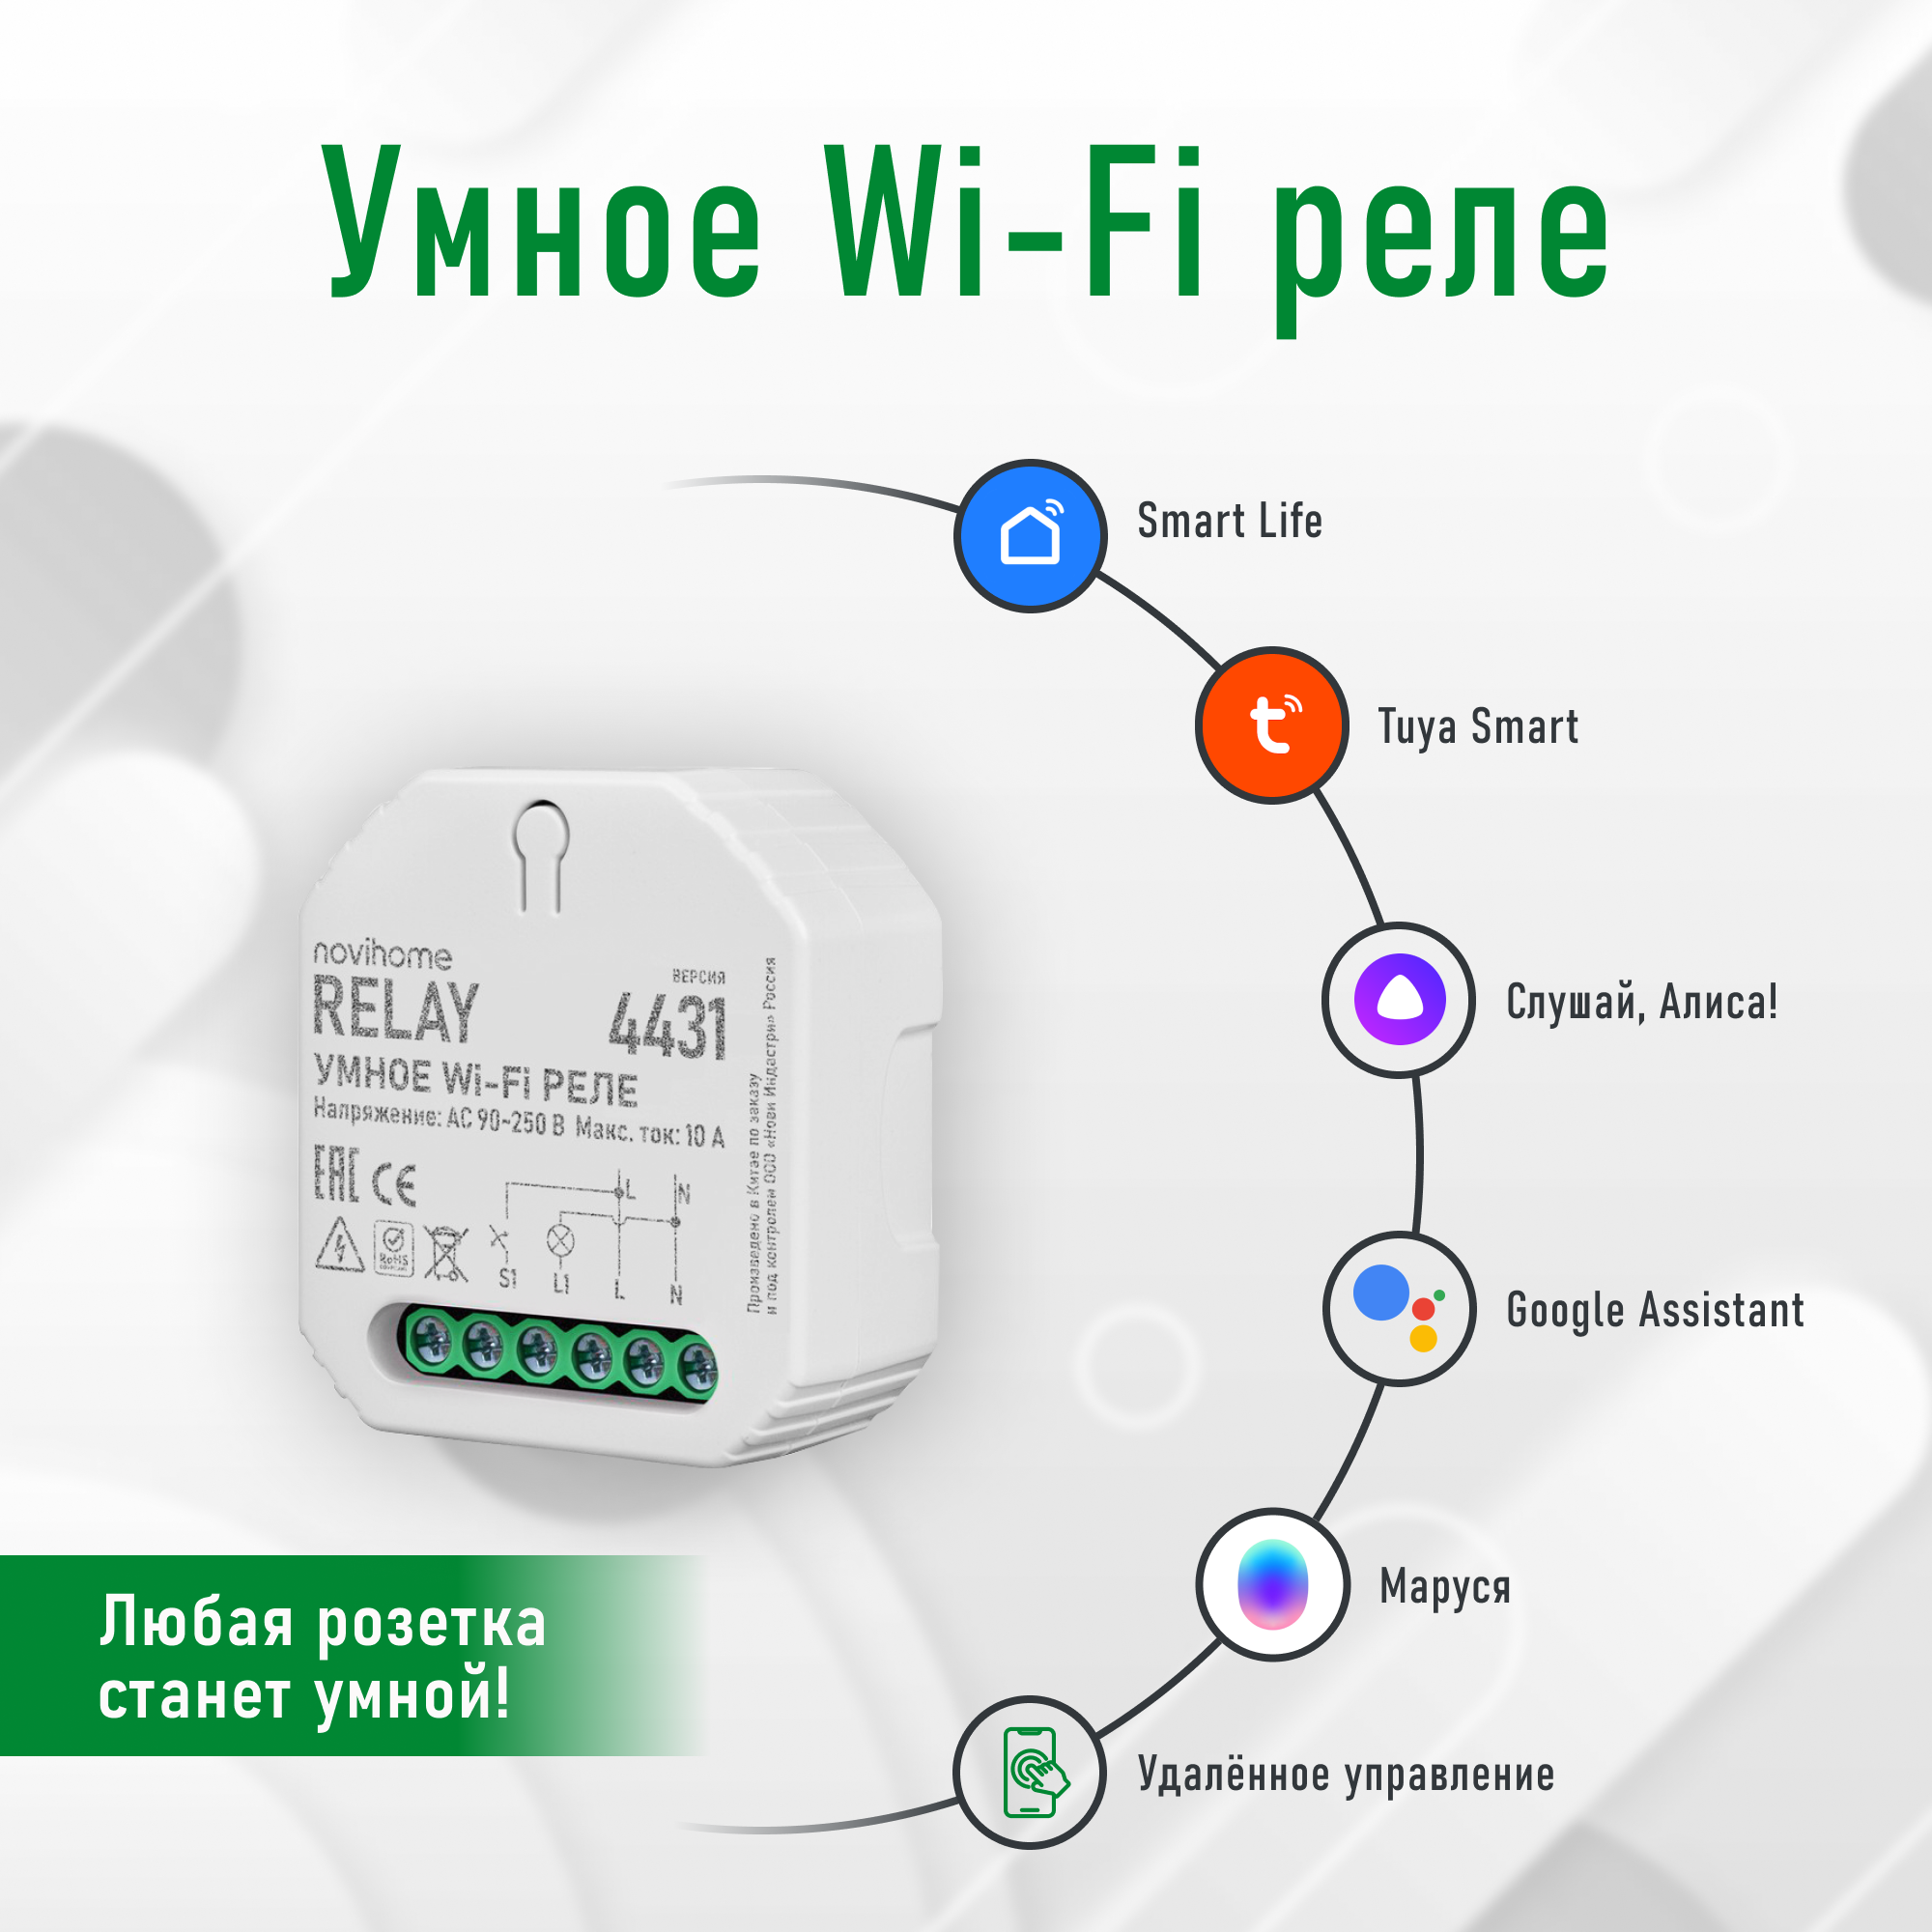 Умное Wi-Fi реле Novihome RELAY. Поддержка Smart Life (Tuya) Яндекс Умный дом (Алиса) VK Маруся